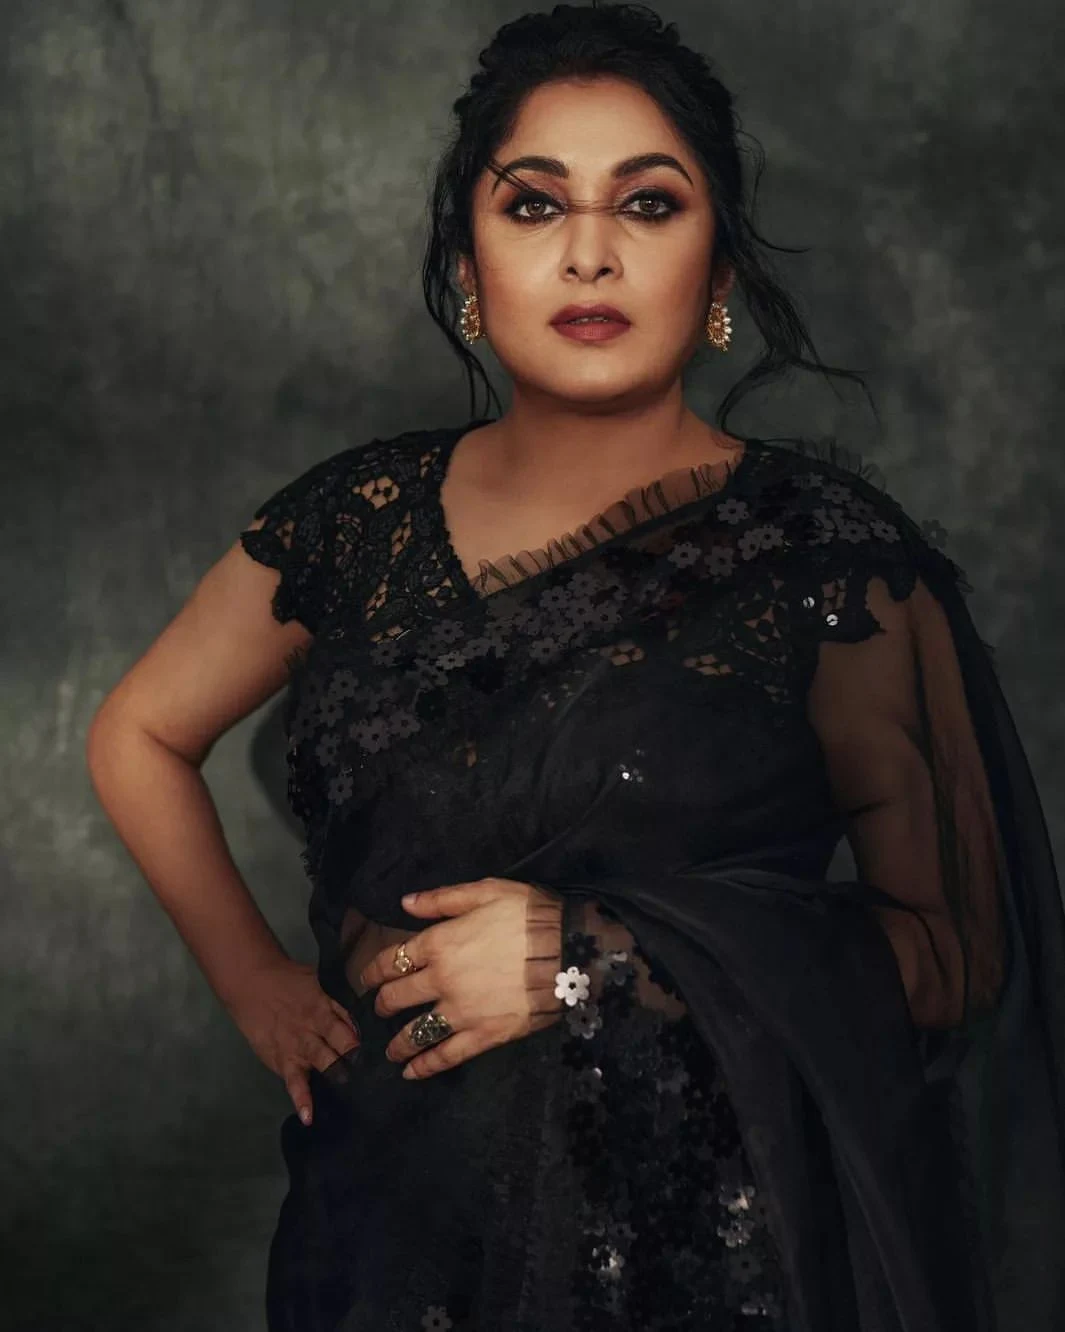 Actress Ramya krishnan black transparent saree Pics